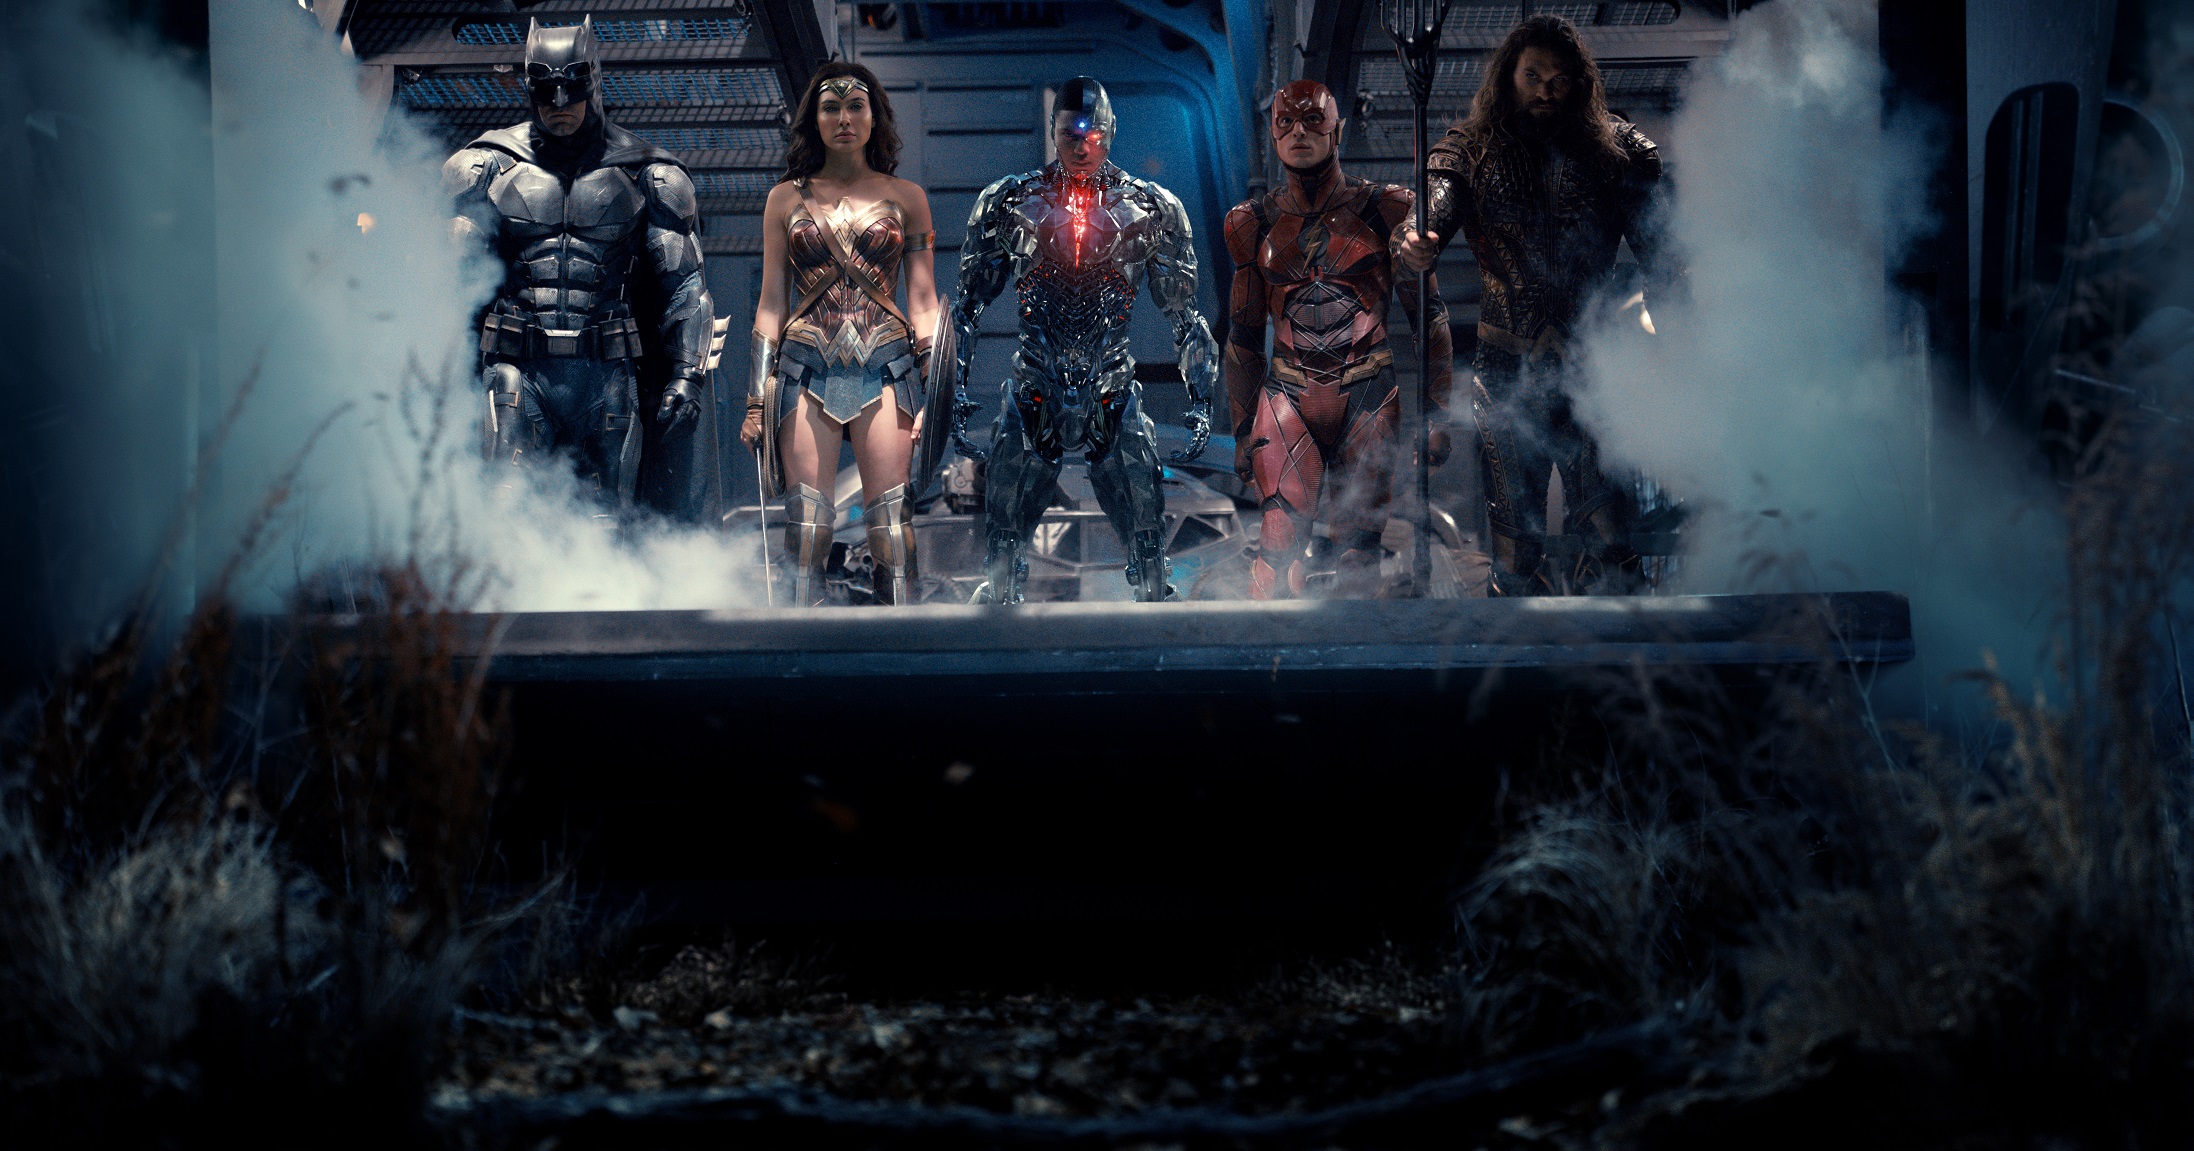 SAIU!!! Zack Snyder’s apresenta o trailer da versão definitiva da Liga da Justiça